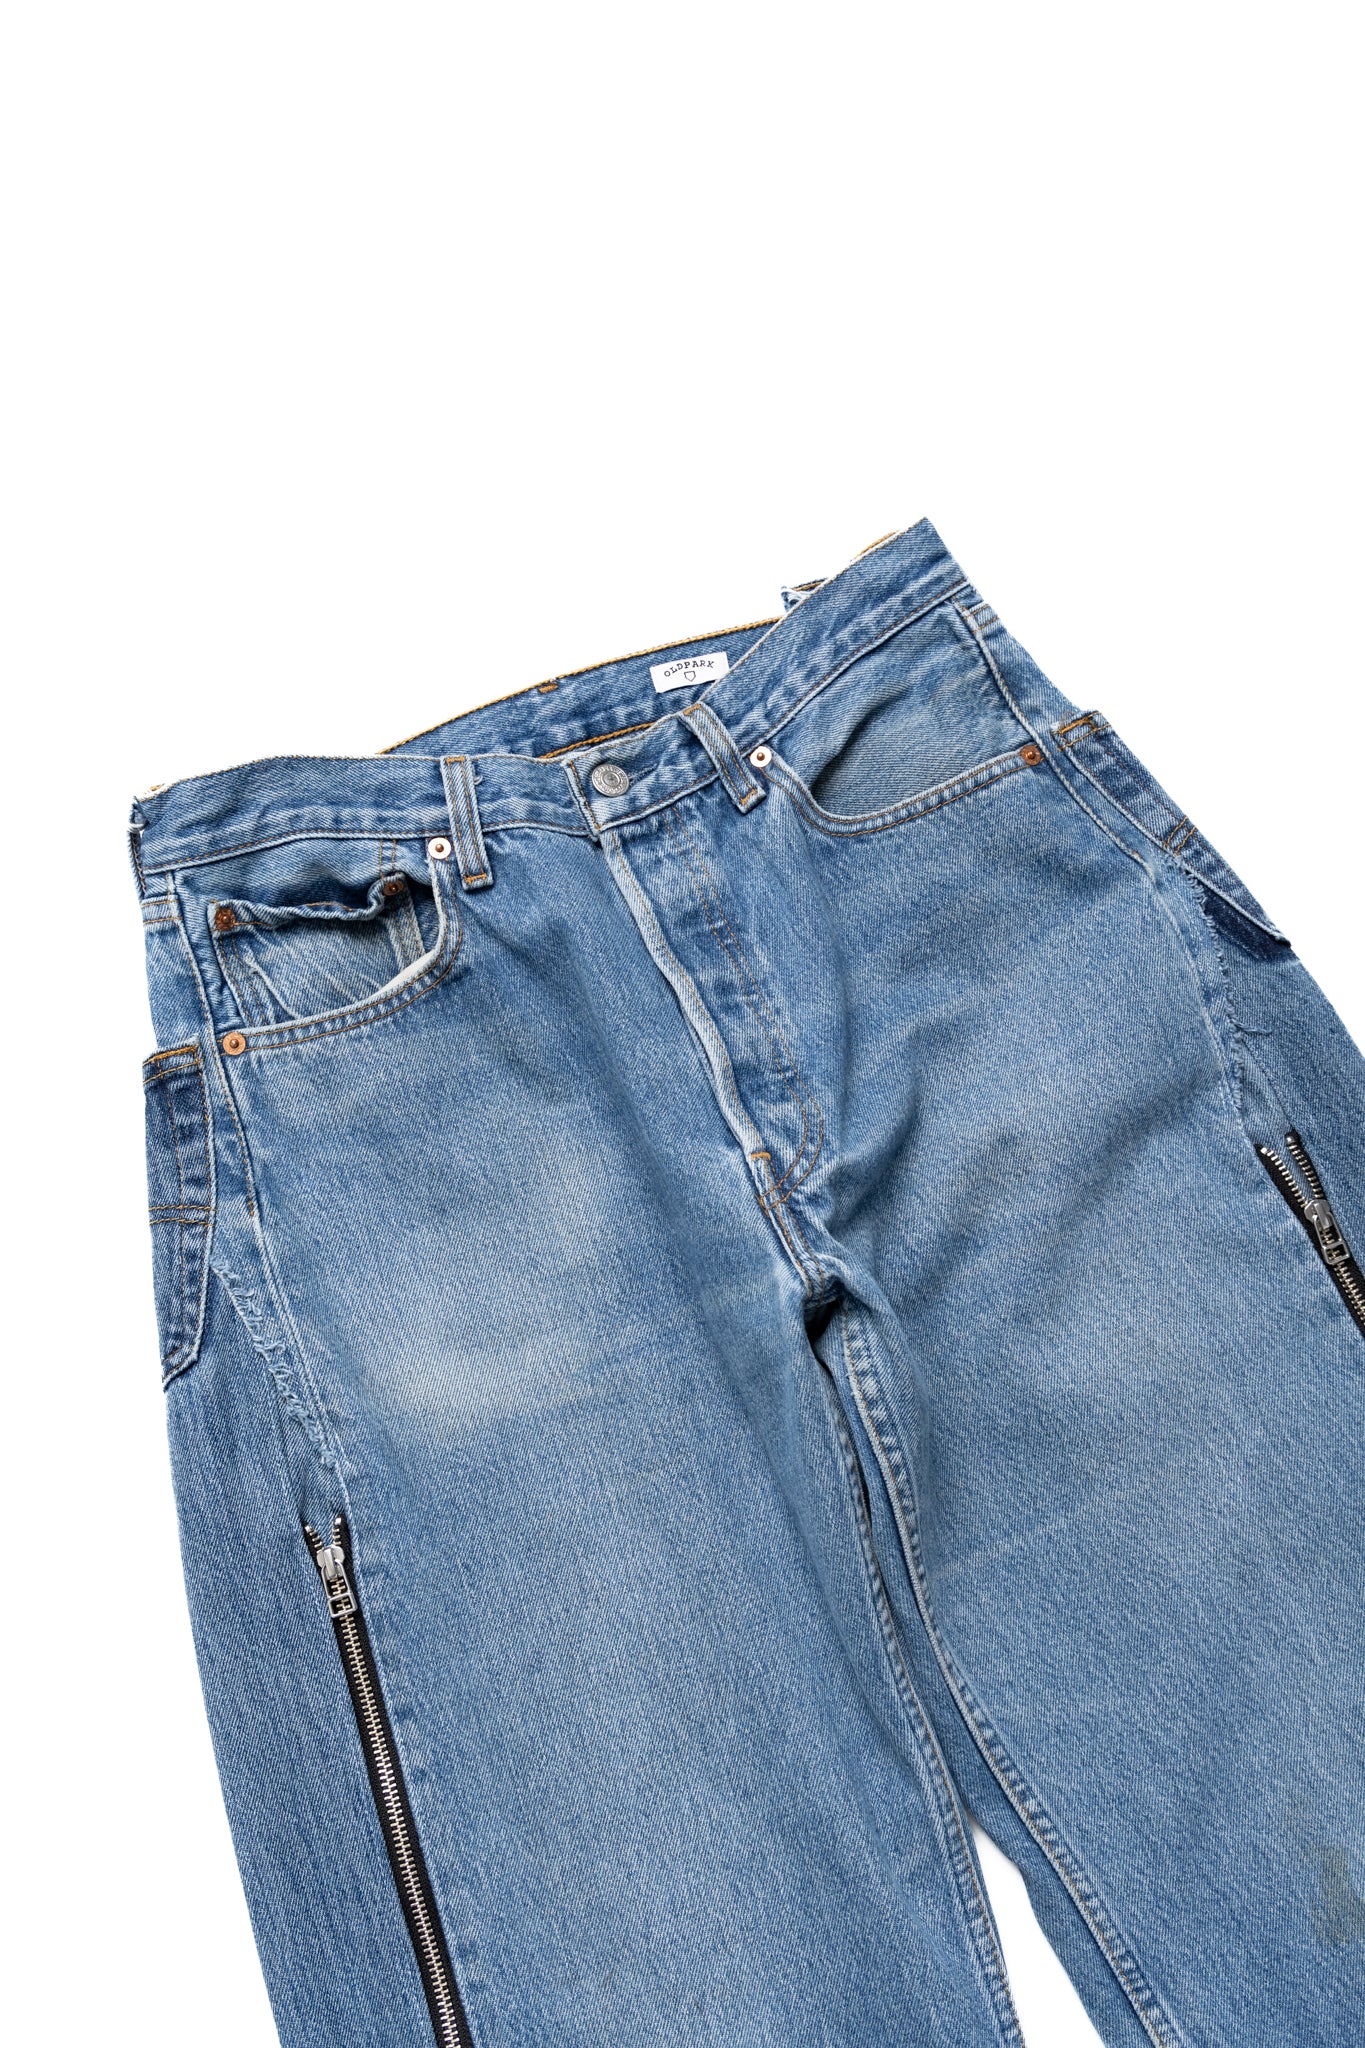 Zip Baggy Jeans Blue - M (1)